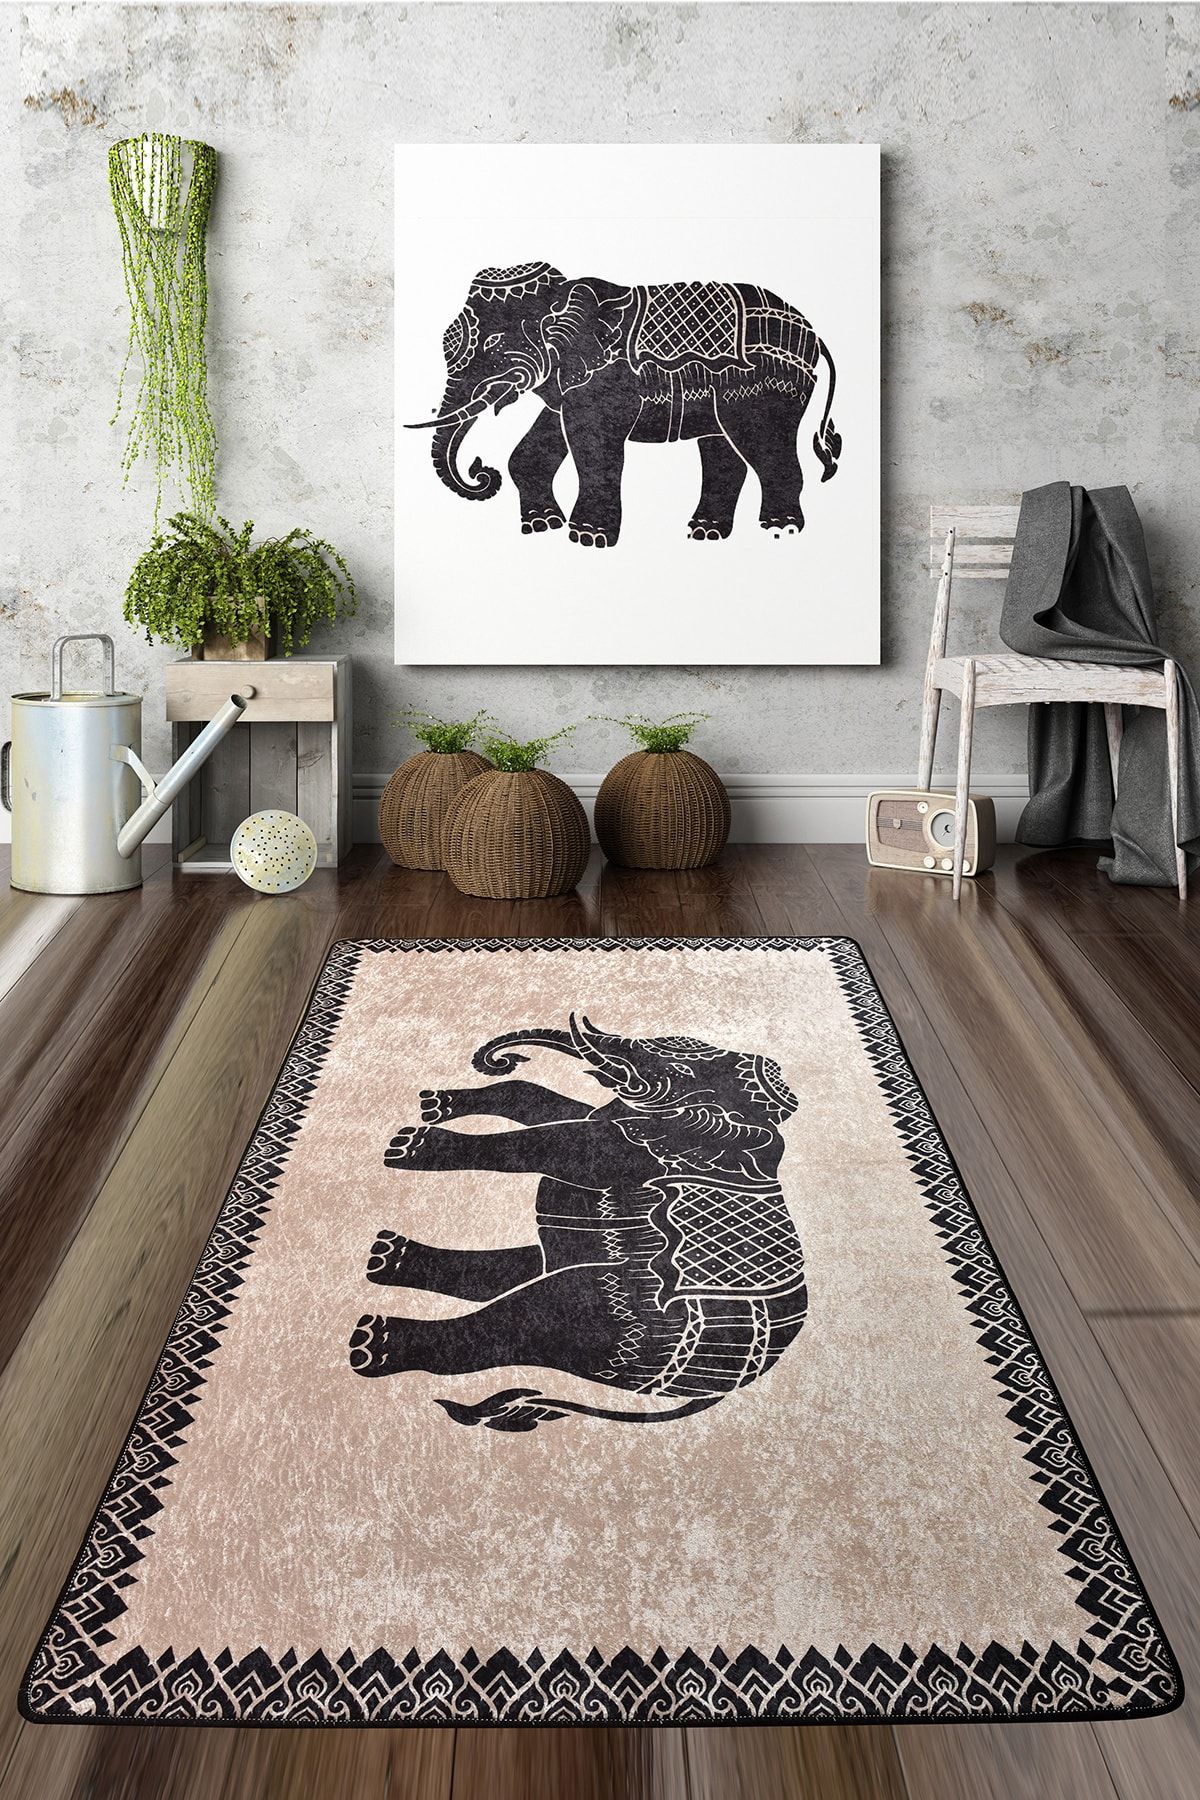 Chilai Home Elefante Nero Djt Dekoratif, Koridor Halı Modelleri